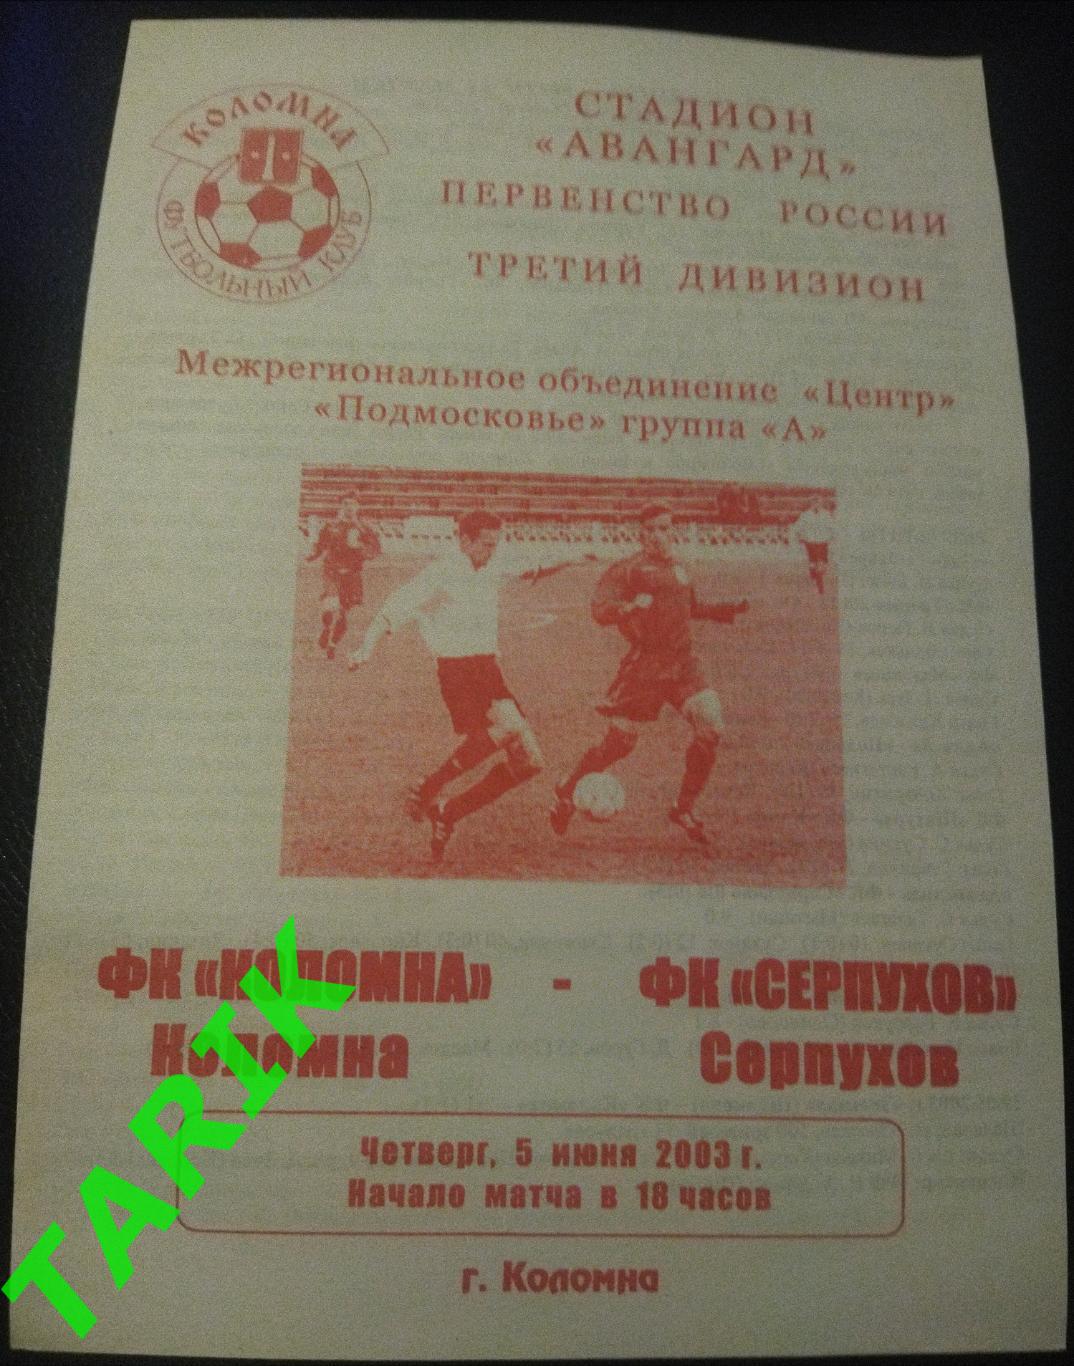 ФК Коломна - ФК Серпухов 5.06.2003